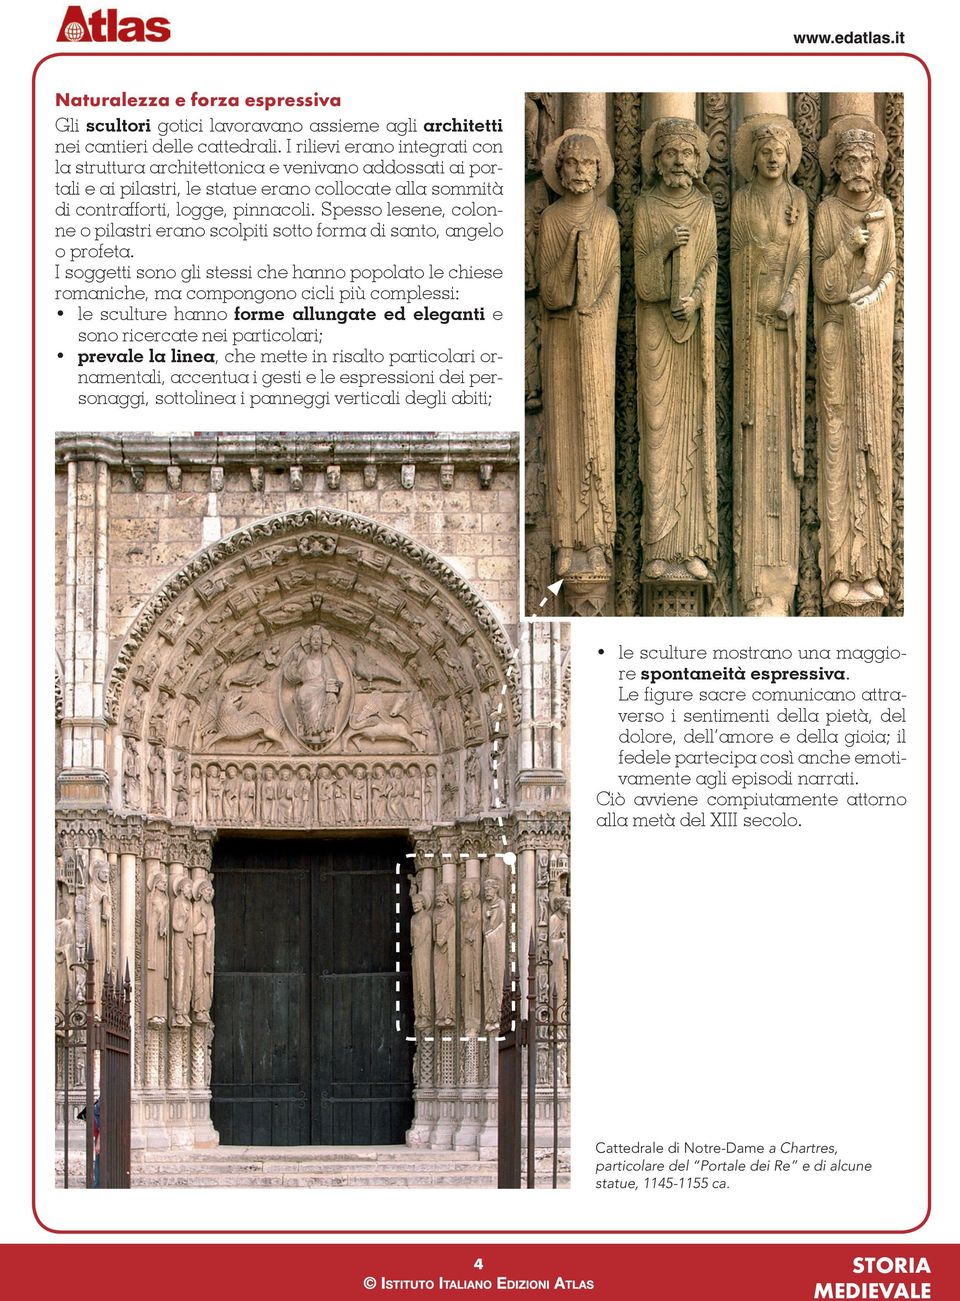 Spesso lesene, colonne o pilastri erano scolpiti sotto forma di santo, angelo o profeta.